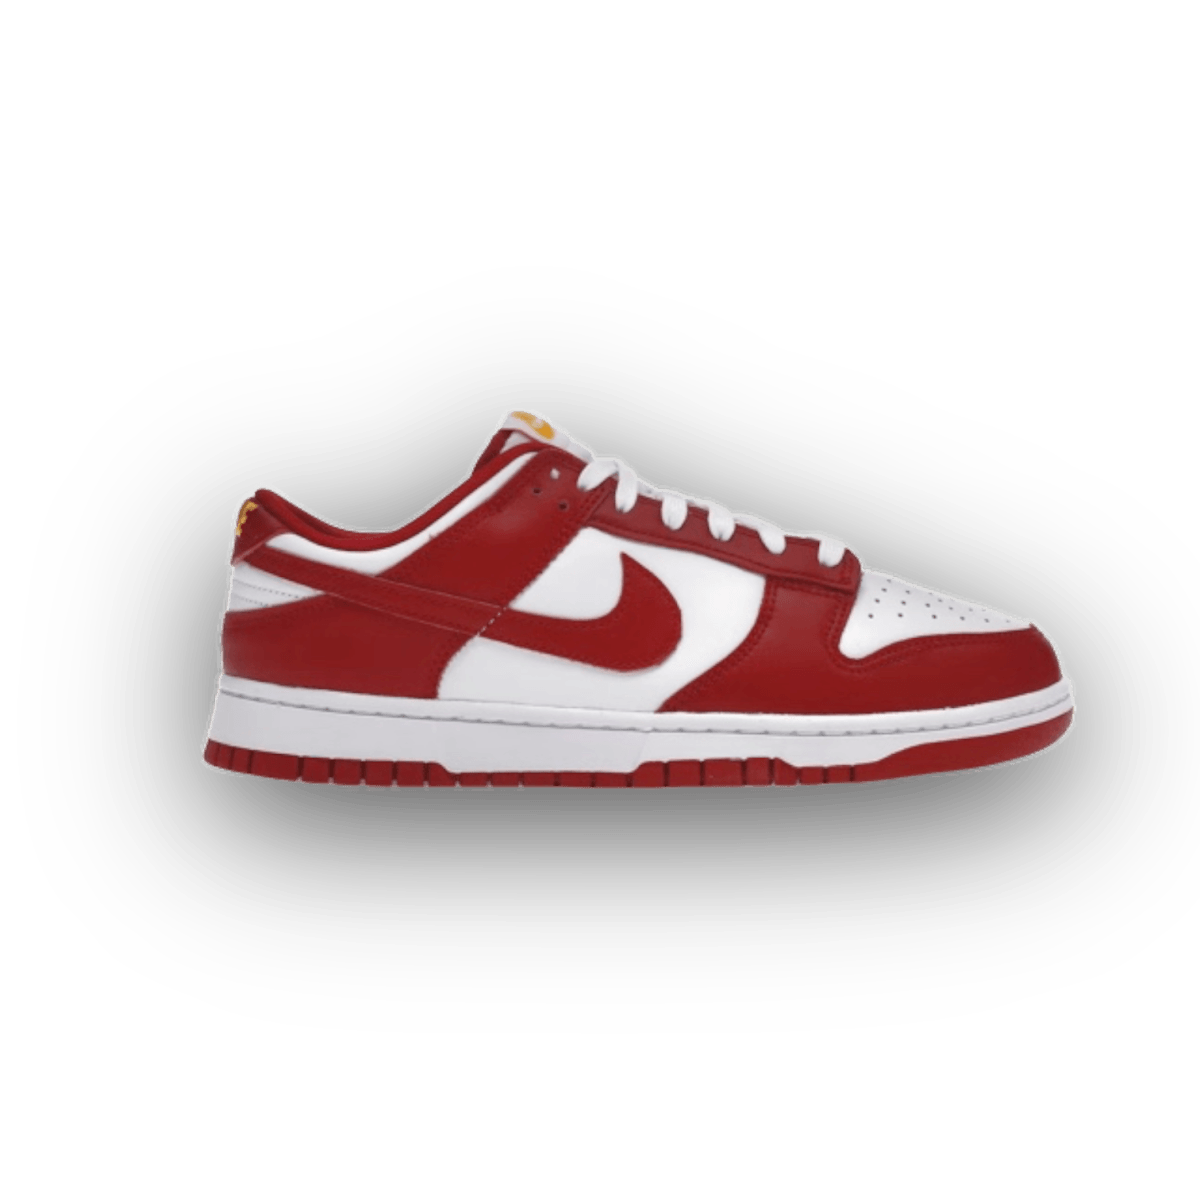 Dunk Low 'Gym Red' - Low Sneaker - Jawns on Fire Sneakers & Streetwear